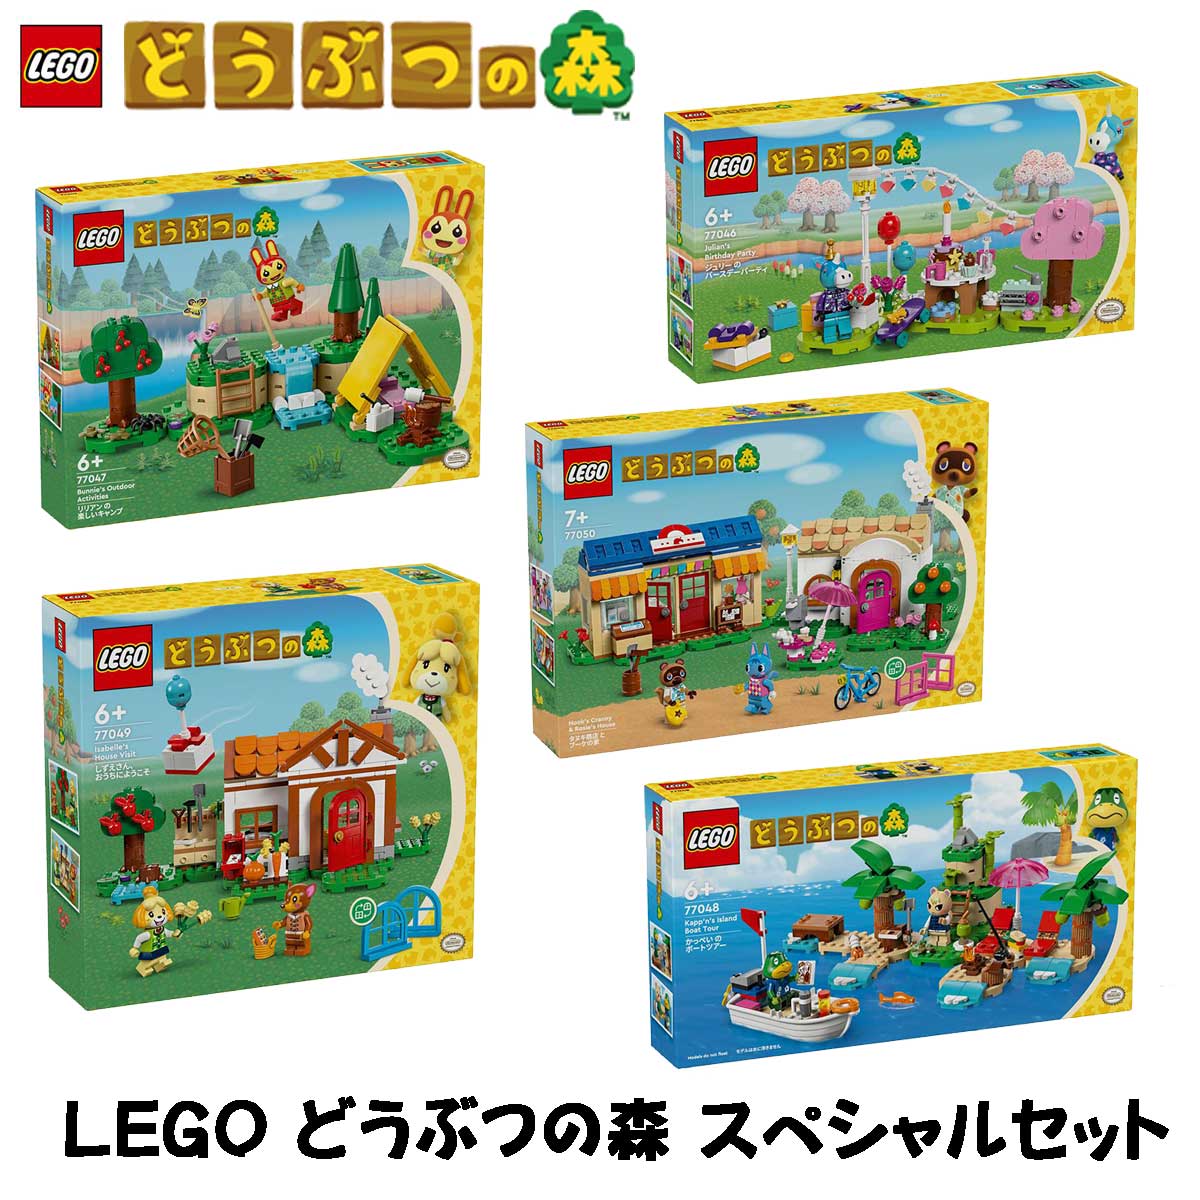 レゴ(LEGO) どうぶつの森 スペシャルパック 今ならレゴ ショッピングバック プレゼント ジュリー の バースデーパーティ リリアン の 楽しいキャンプ かっぺい の ボートツアー しずえさん、おうちにようこそ タヌキ商店 と ブーケの家 77046 77047 77048 77049 77050